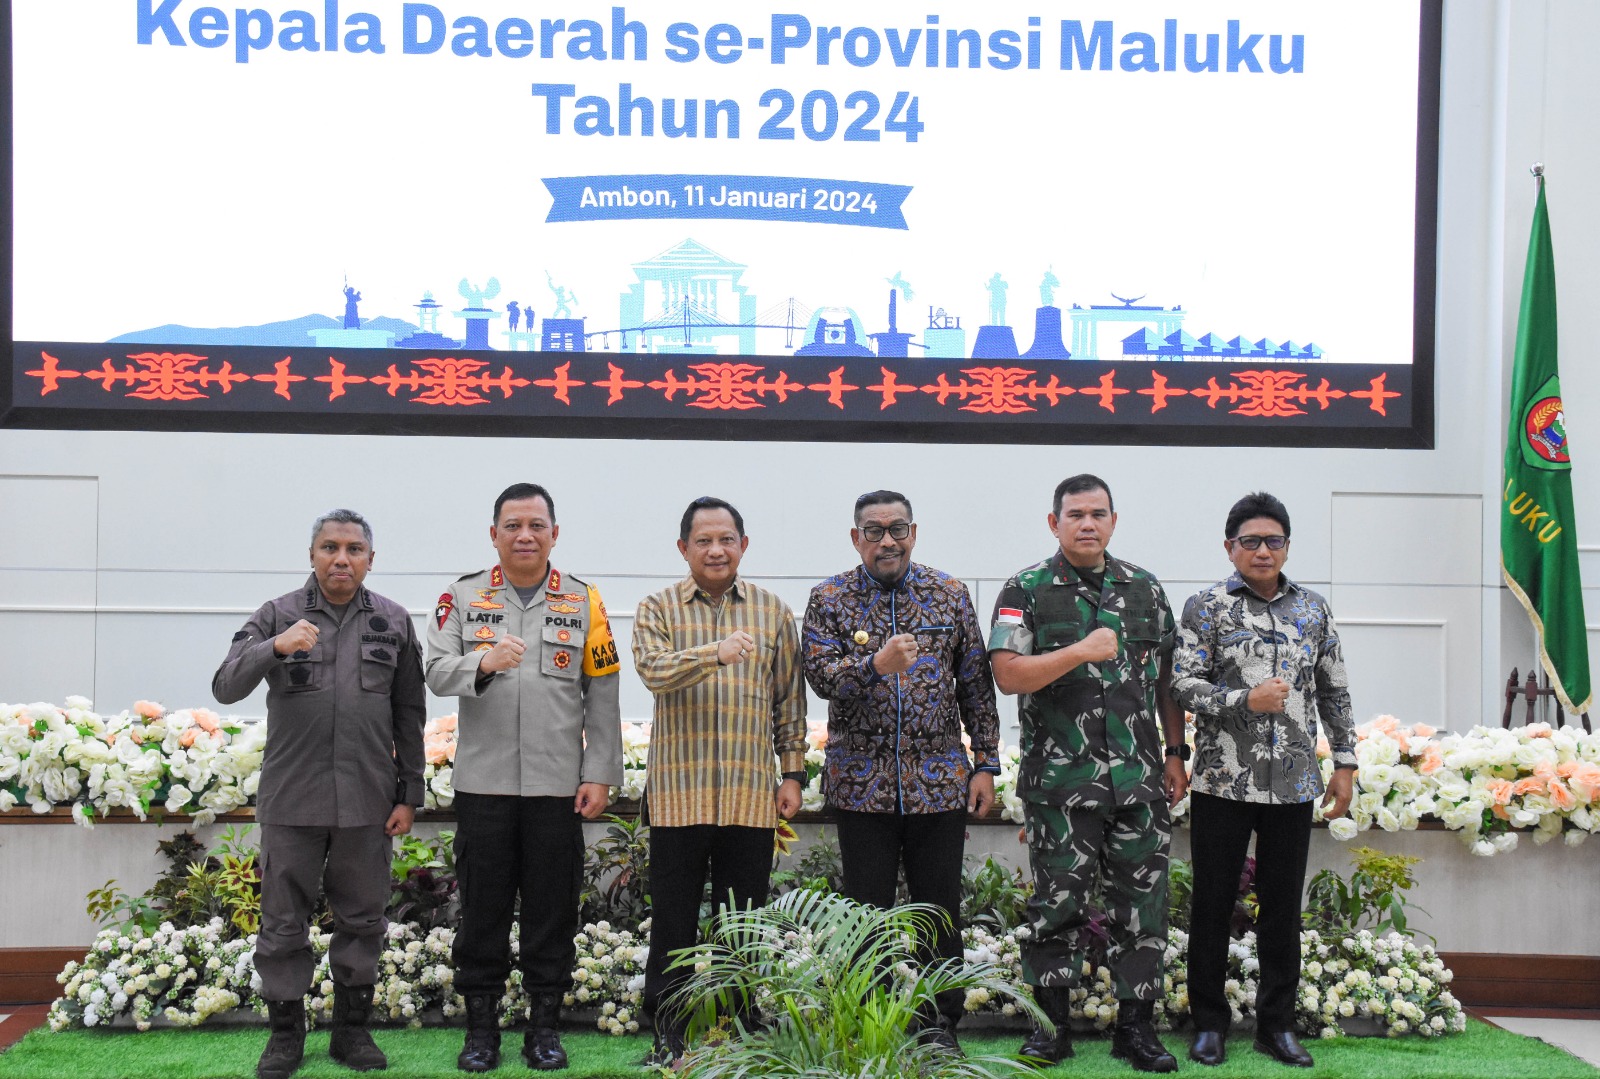 Pangdam Pattimura Hadiri Rakor Kepala Daerah Se-Provinsi Maluku Tahun 2024